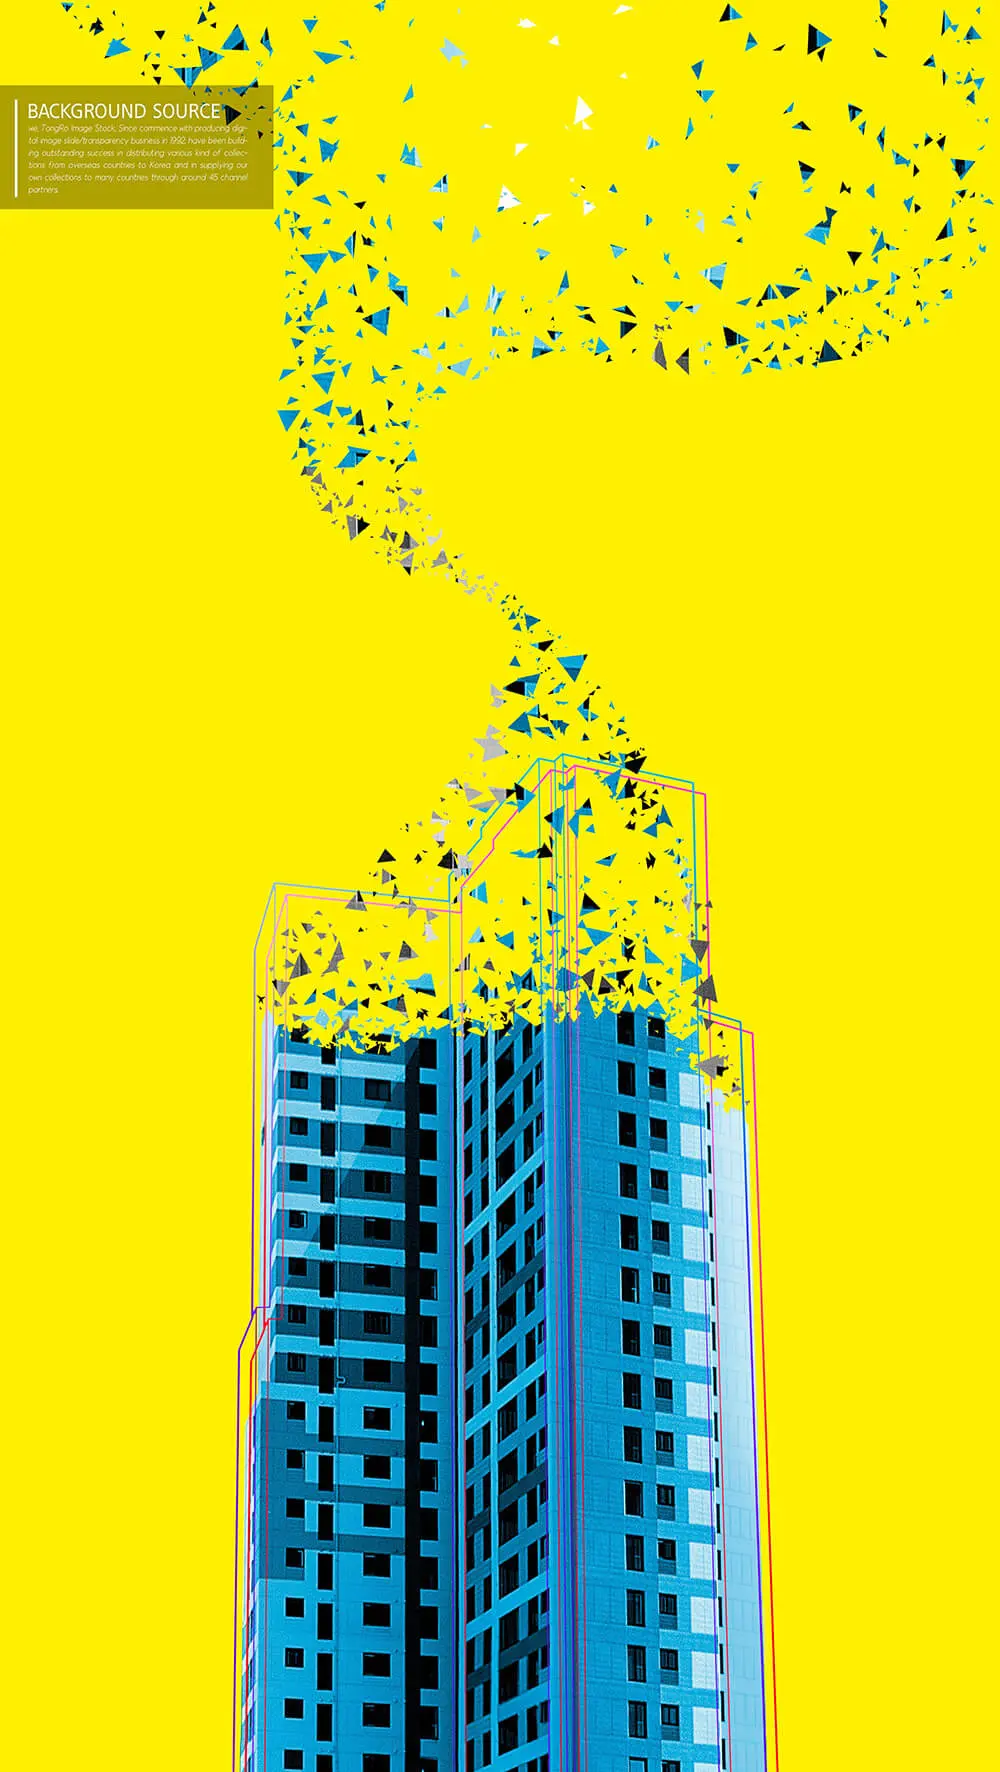 高楼碎片抽象视觉背景图素材 (psd)插图